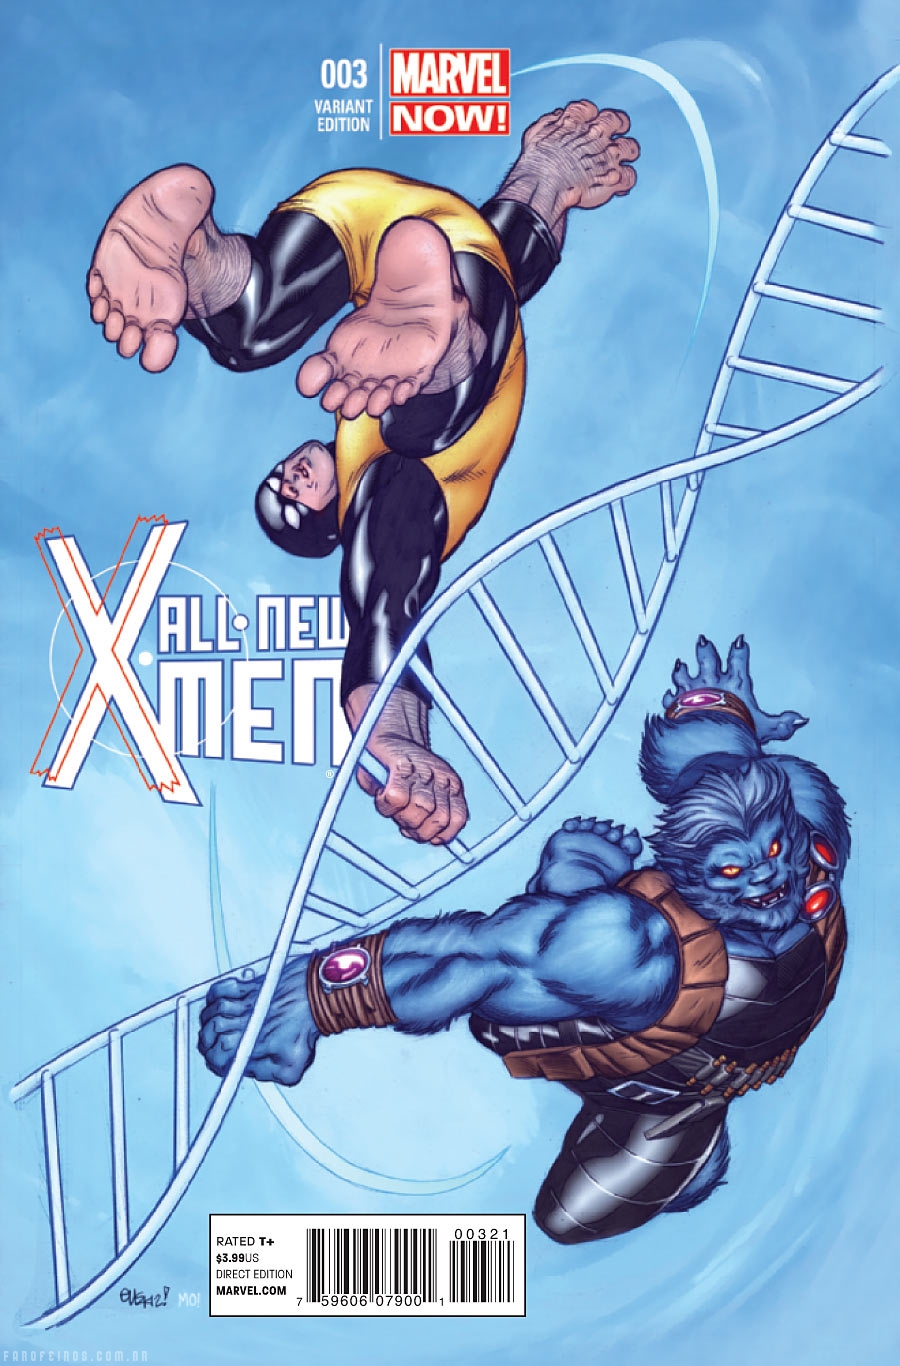 Preview de All New X-Men #3 - Ciclope - Marvel Comics - Blog Farofeiros